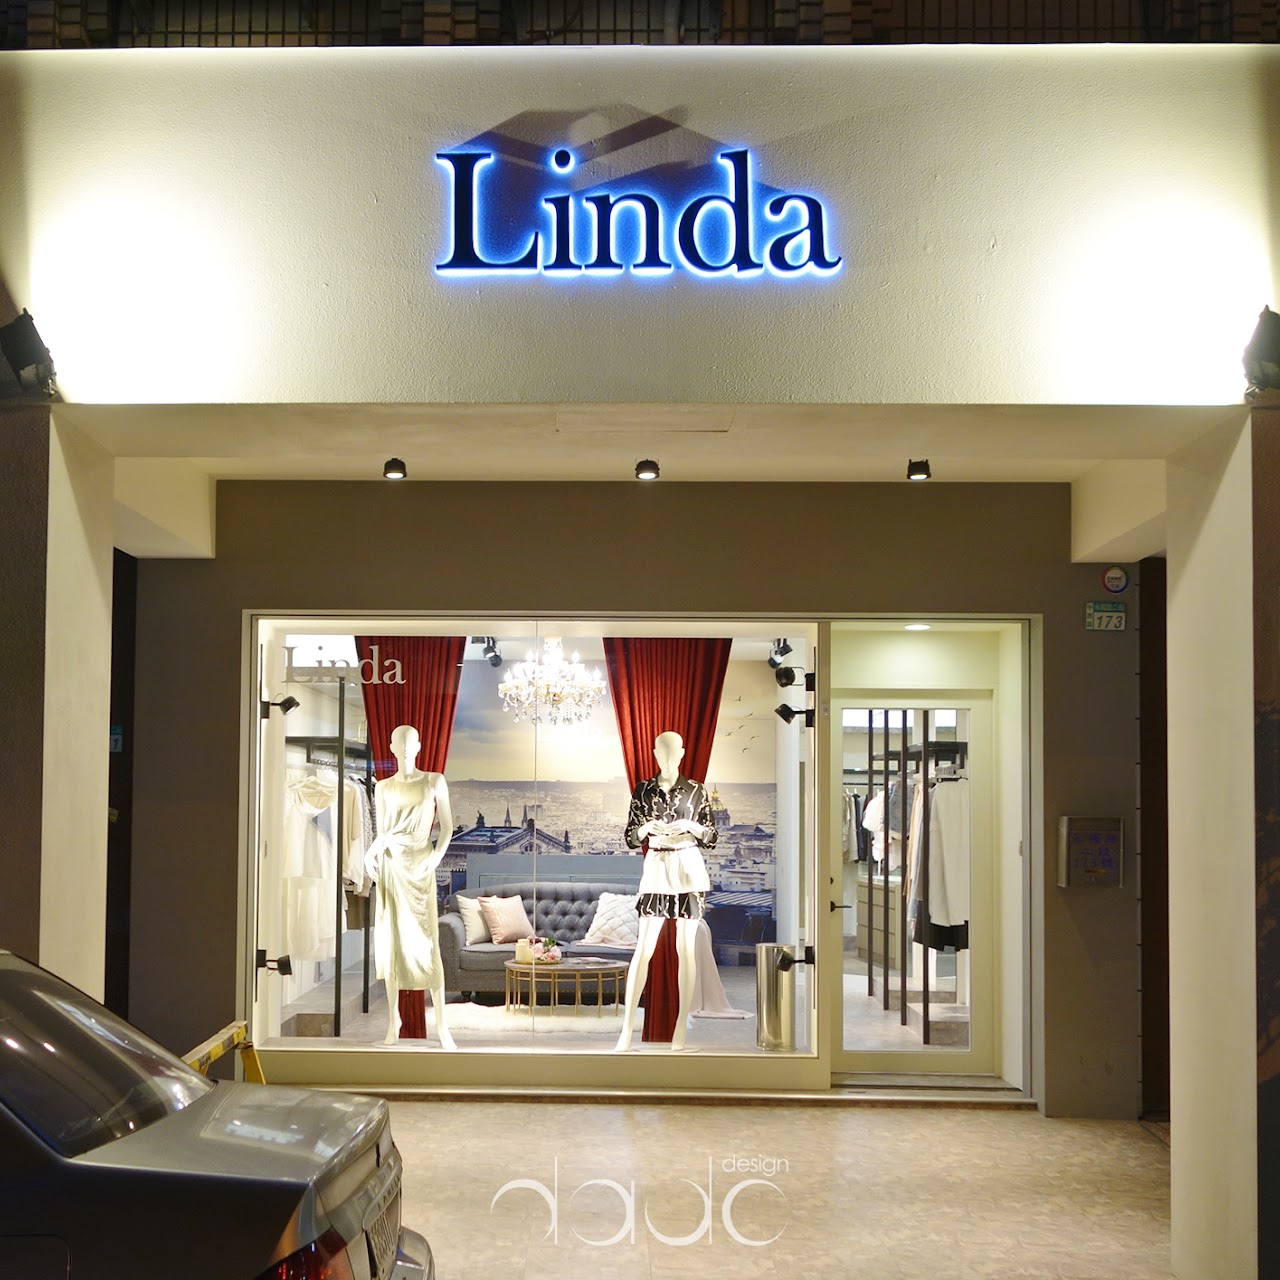 時尚巴黎- Linda的服裝店